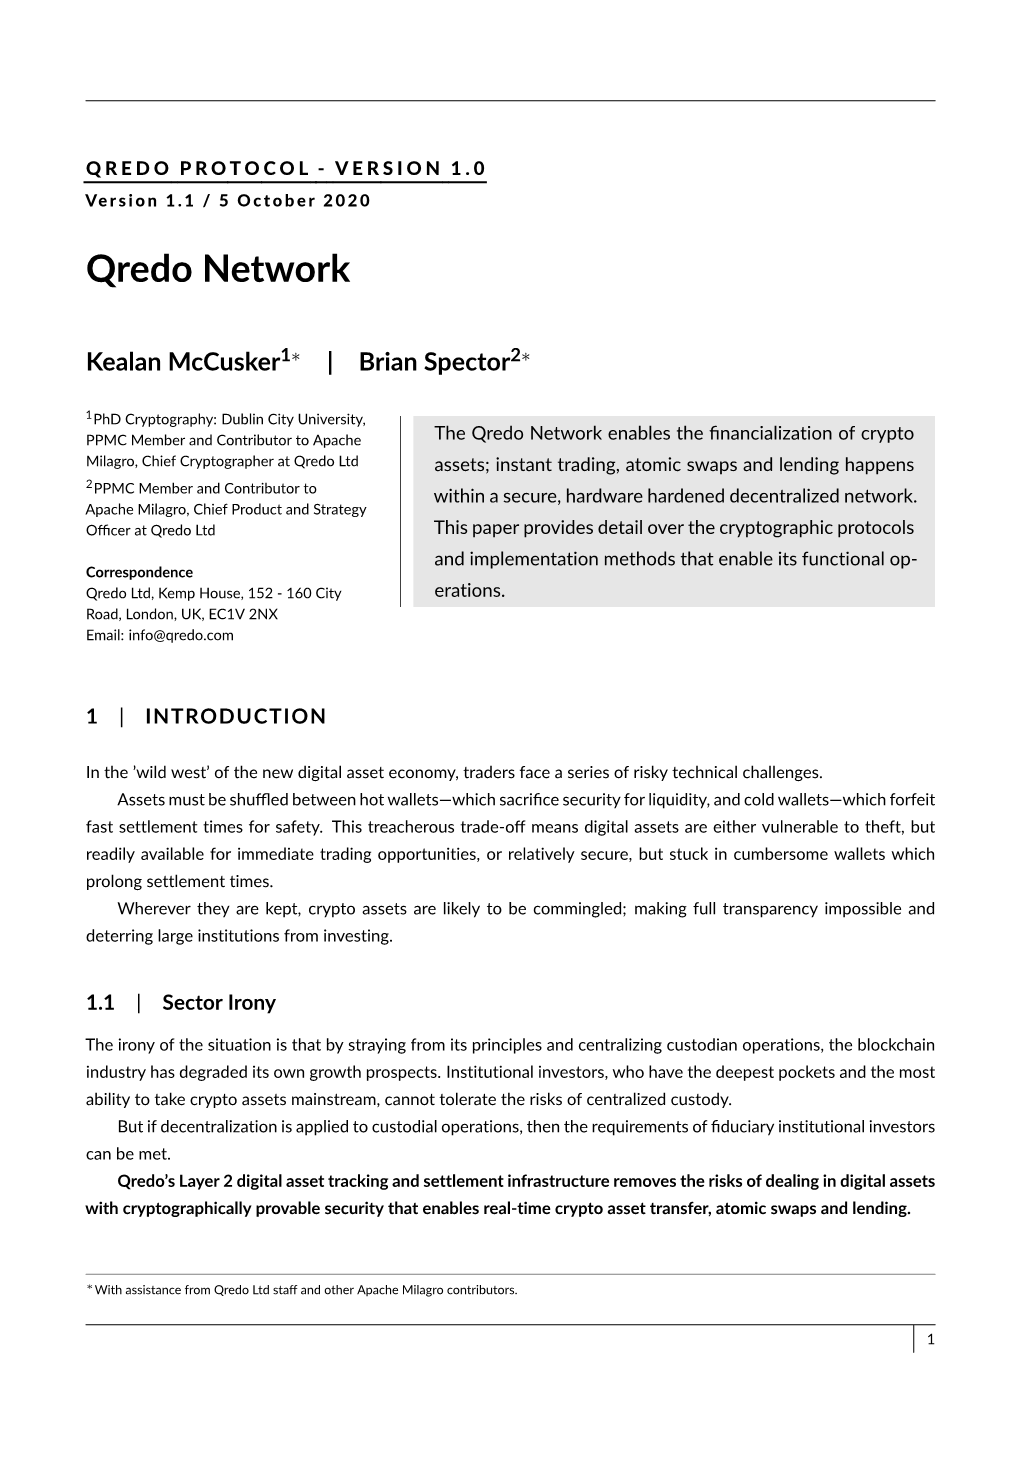 Qredo Network